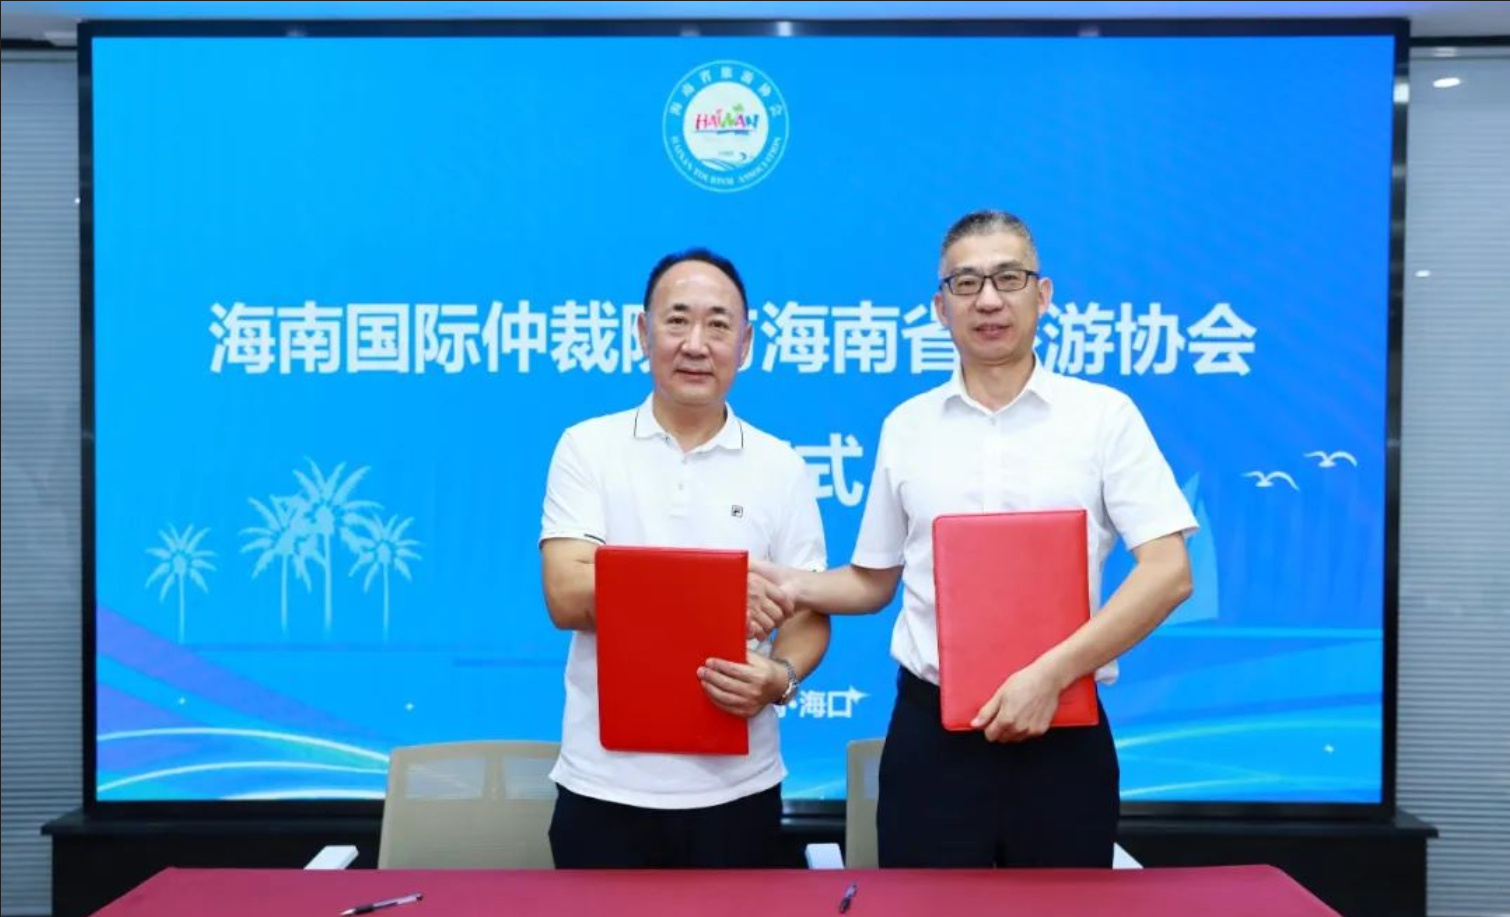 海南國際仲裁院與海南省旅遊協會簽署戰略合作協議 共建「海南國際旅遊（投資消費）調解仲裁中心」